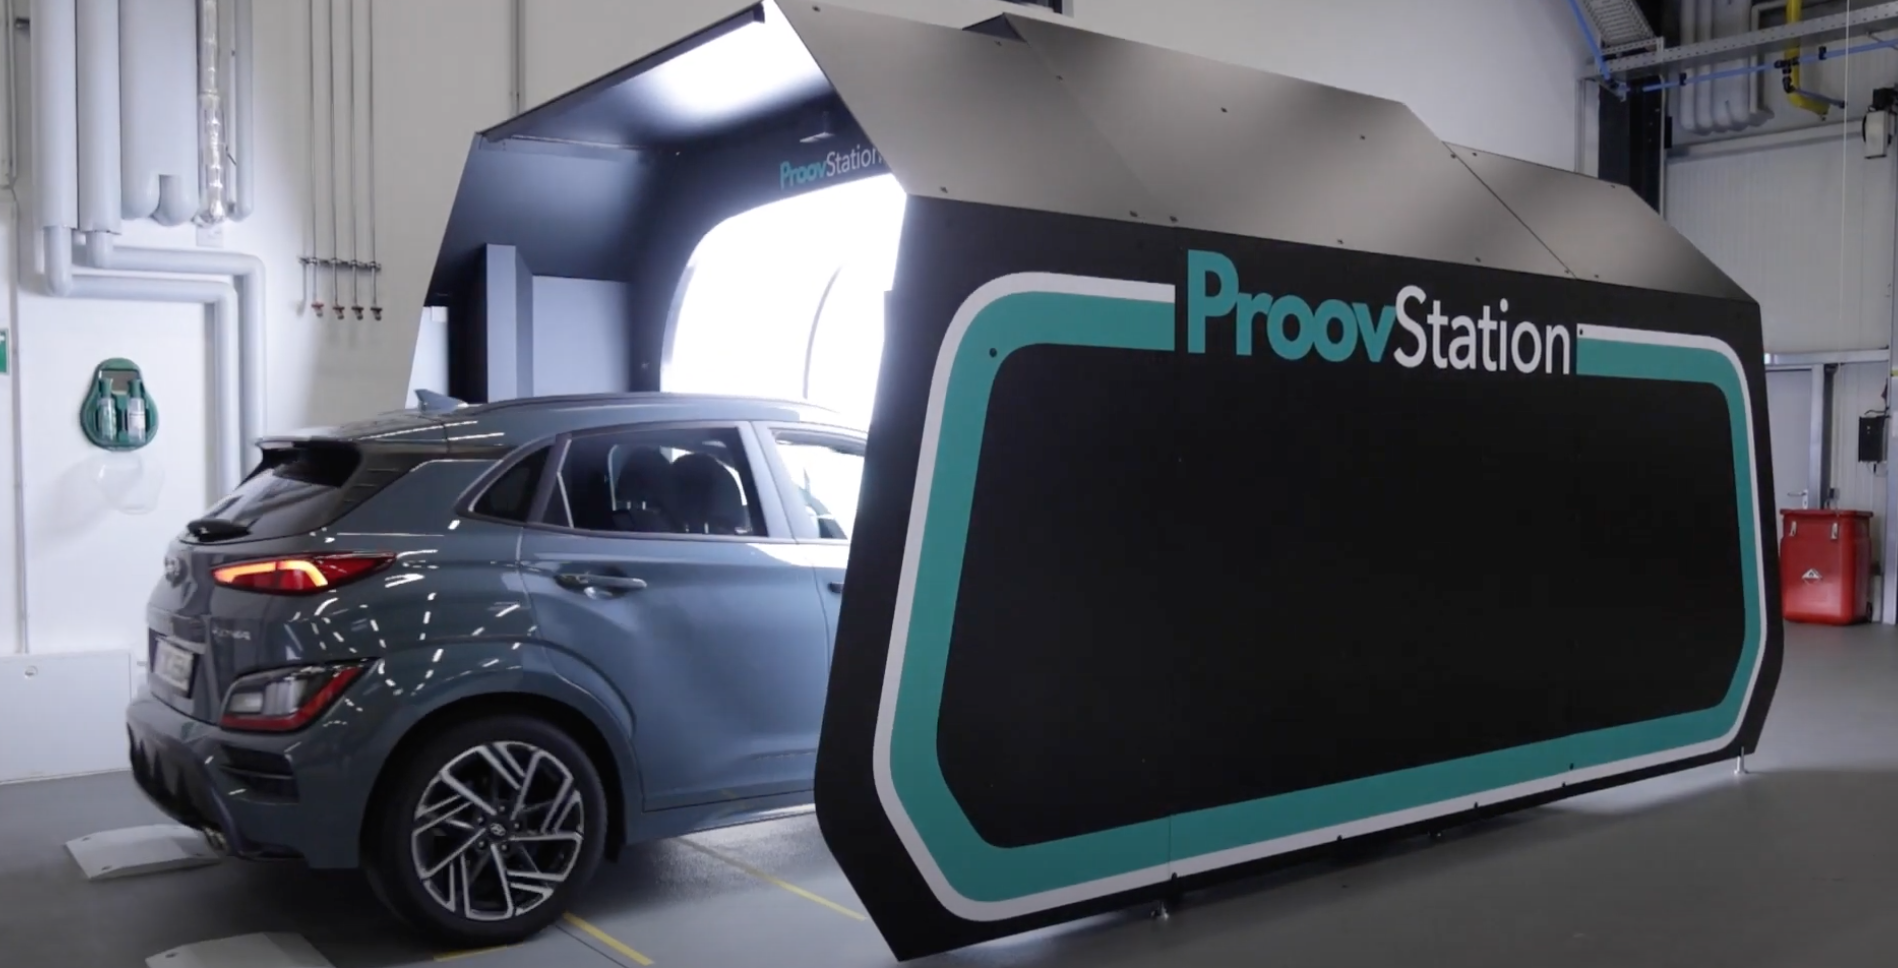 Lyon : Proovstation, Michelin et Carrefour testent un service innovant d’estimation et de rachat de véhicule à proposer aux consommateurs